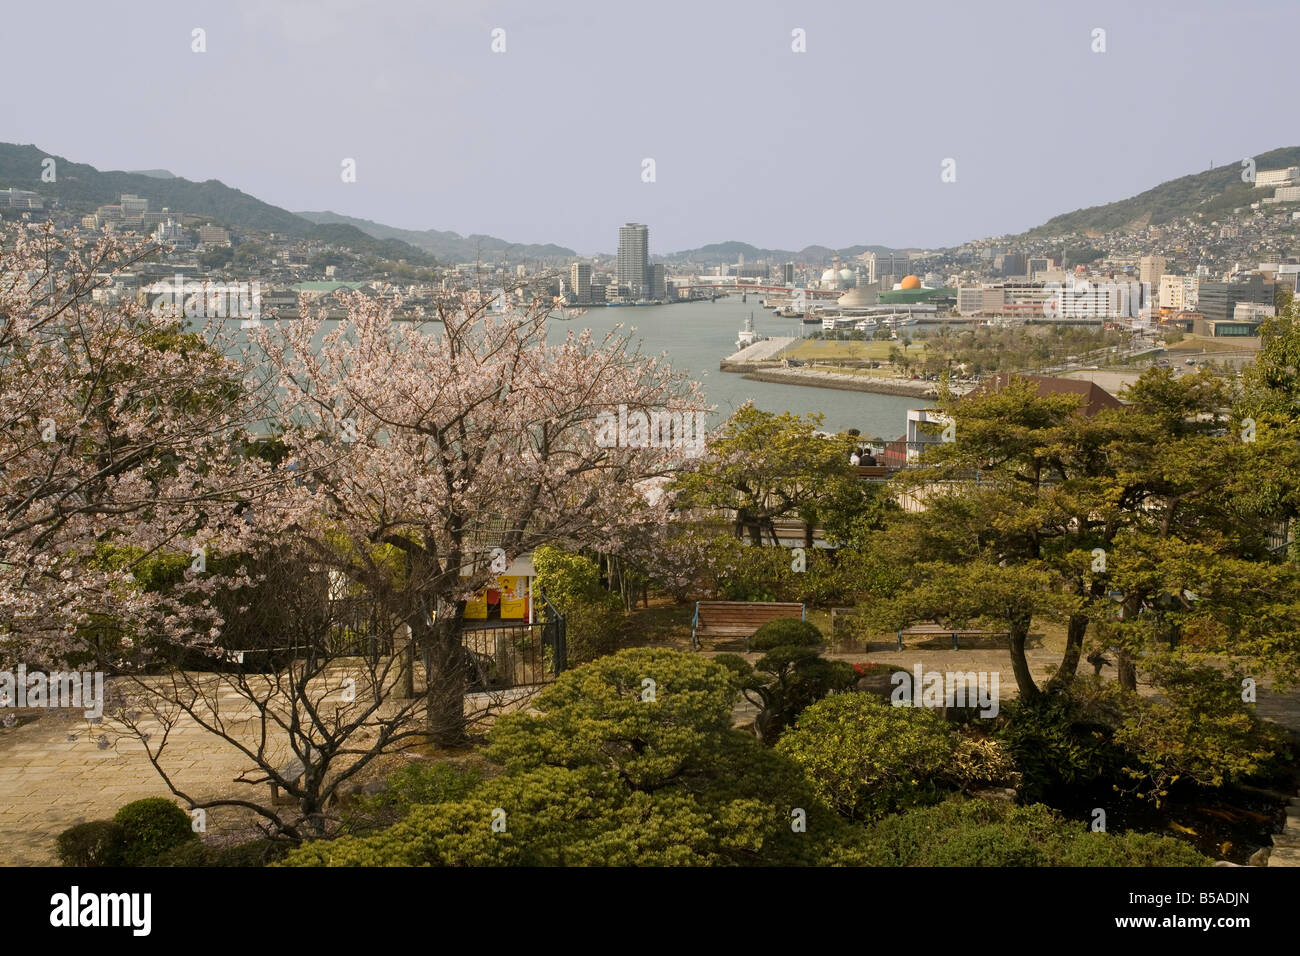 Vue de la ville et du port de Nagasaki Japon Asie jardins Glover Banque D'Images